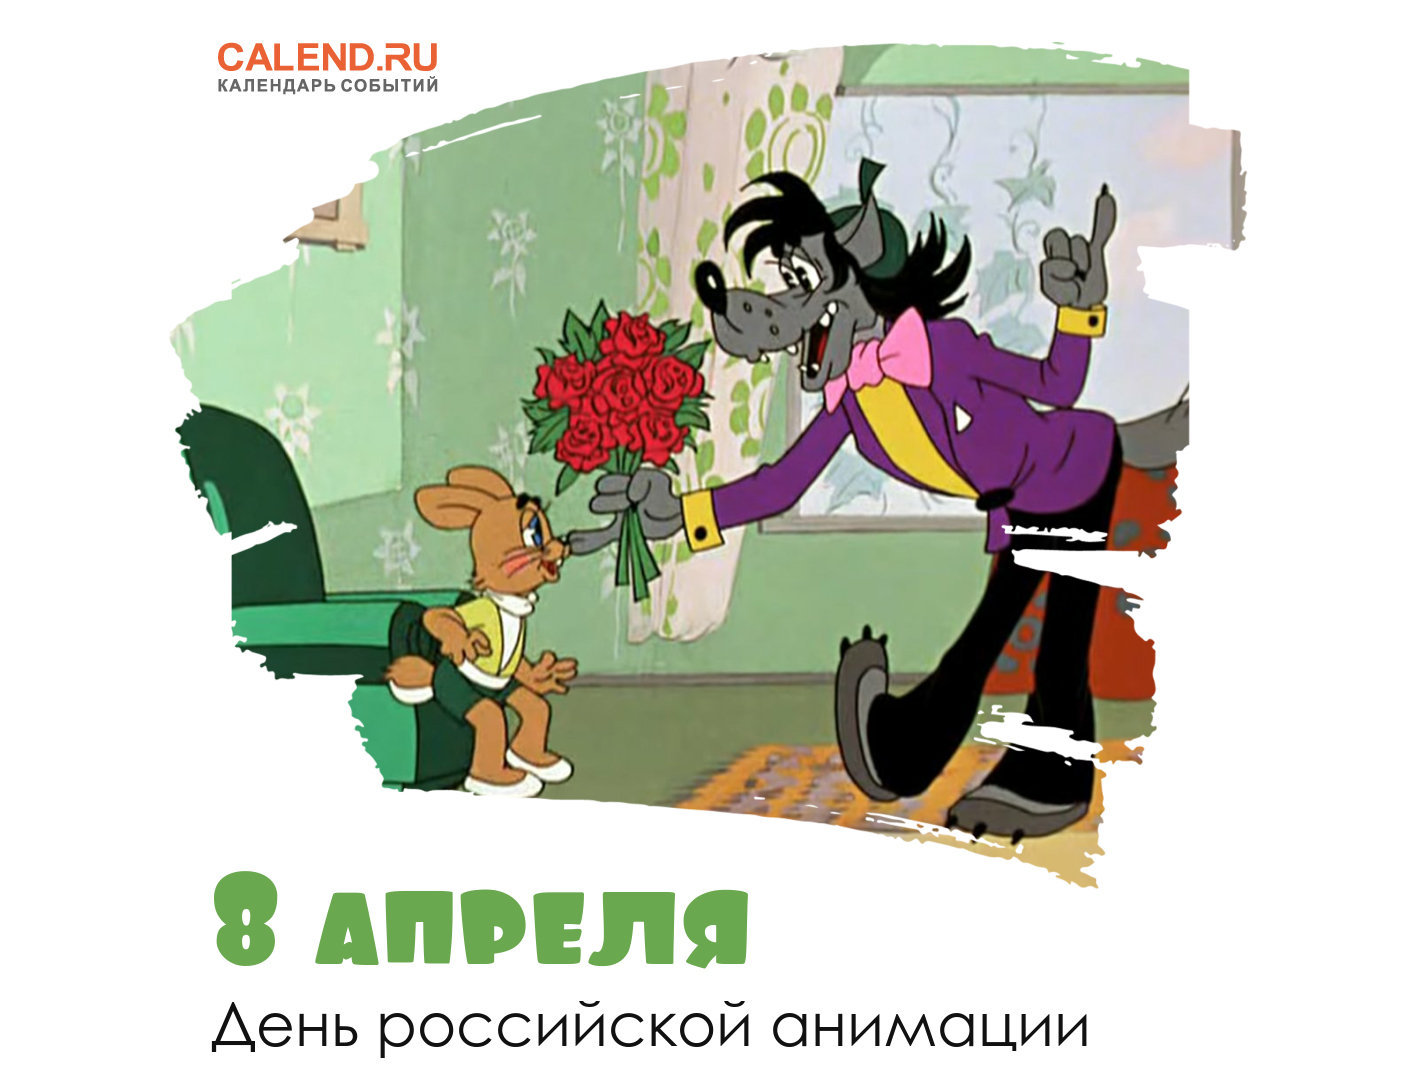 8 апреля — День российской анимации / Открытка дня / Журнал Calend.ru